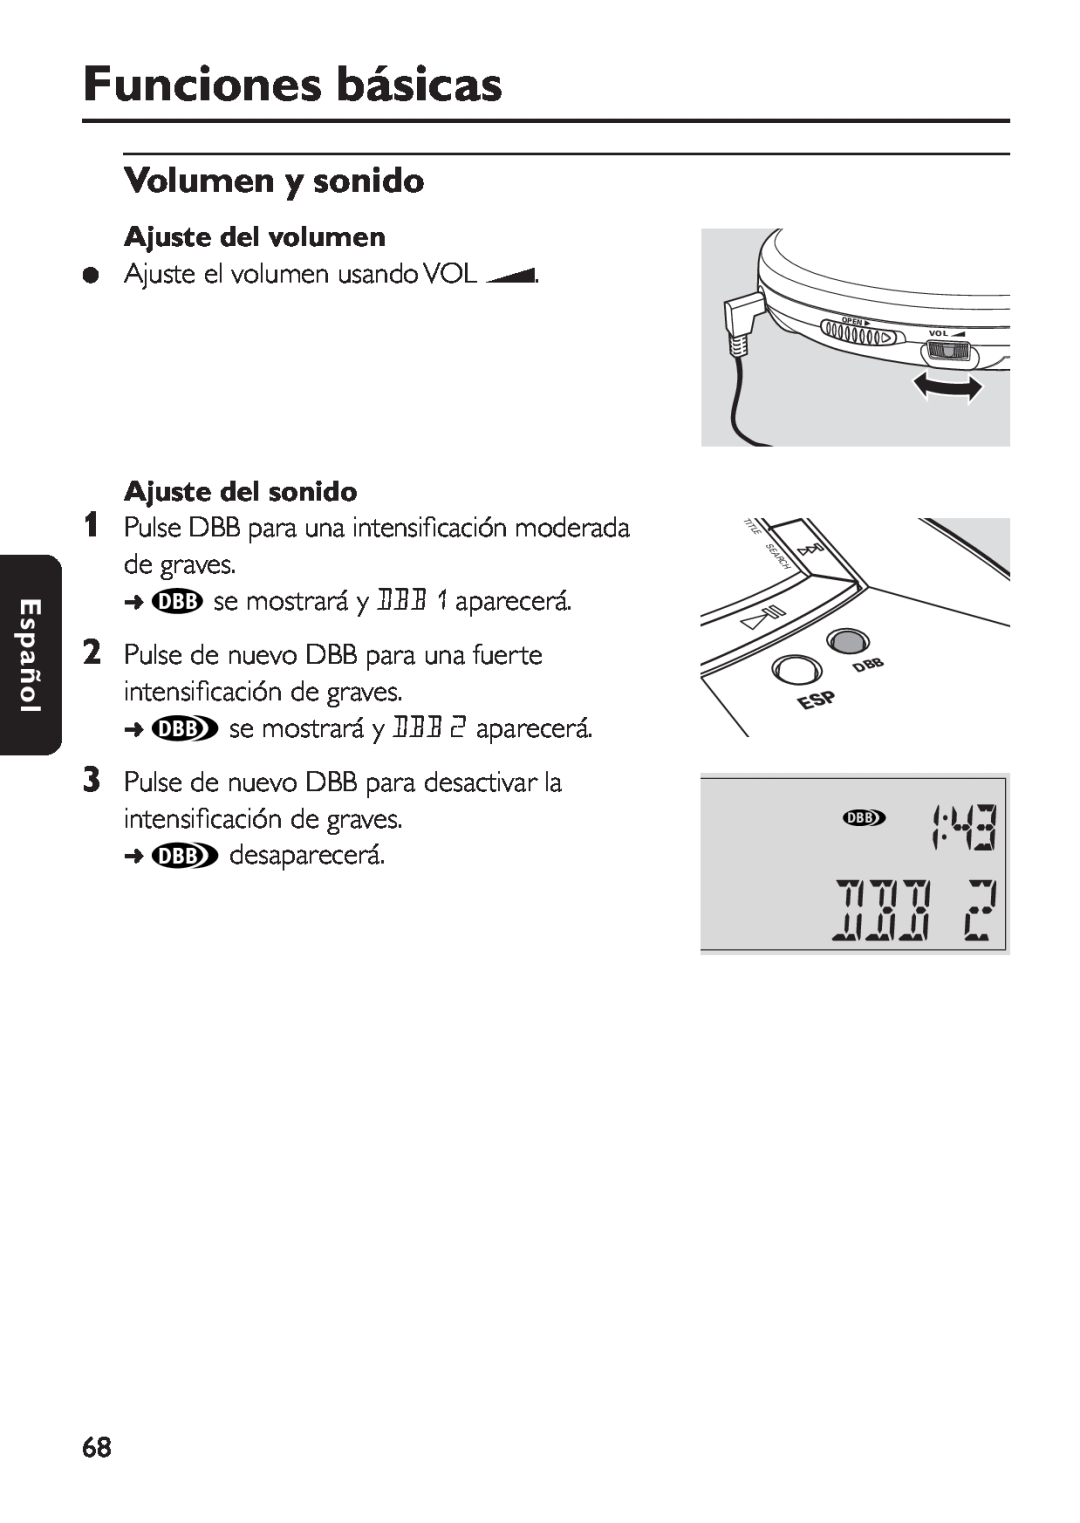 Philips EXP 501/00 manual Volumen y sonido, Ajuste del volumen, Ajuste del sonido, Funciones básicas, Español 